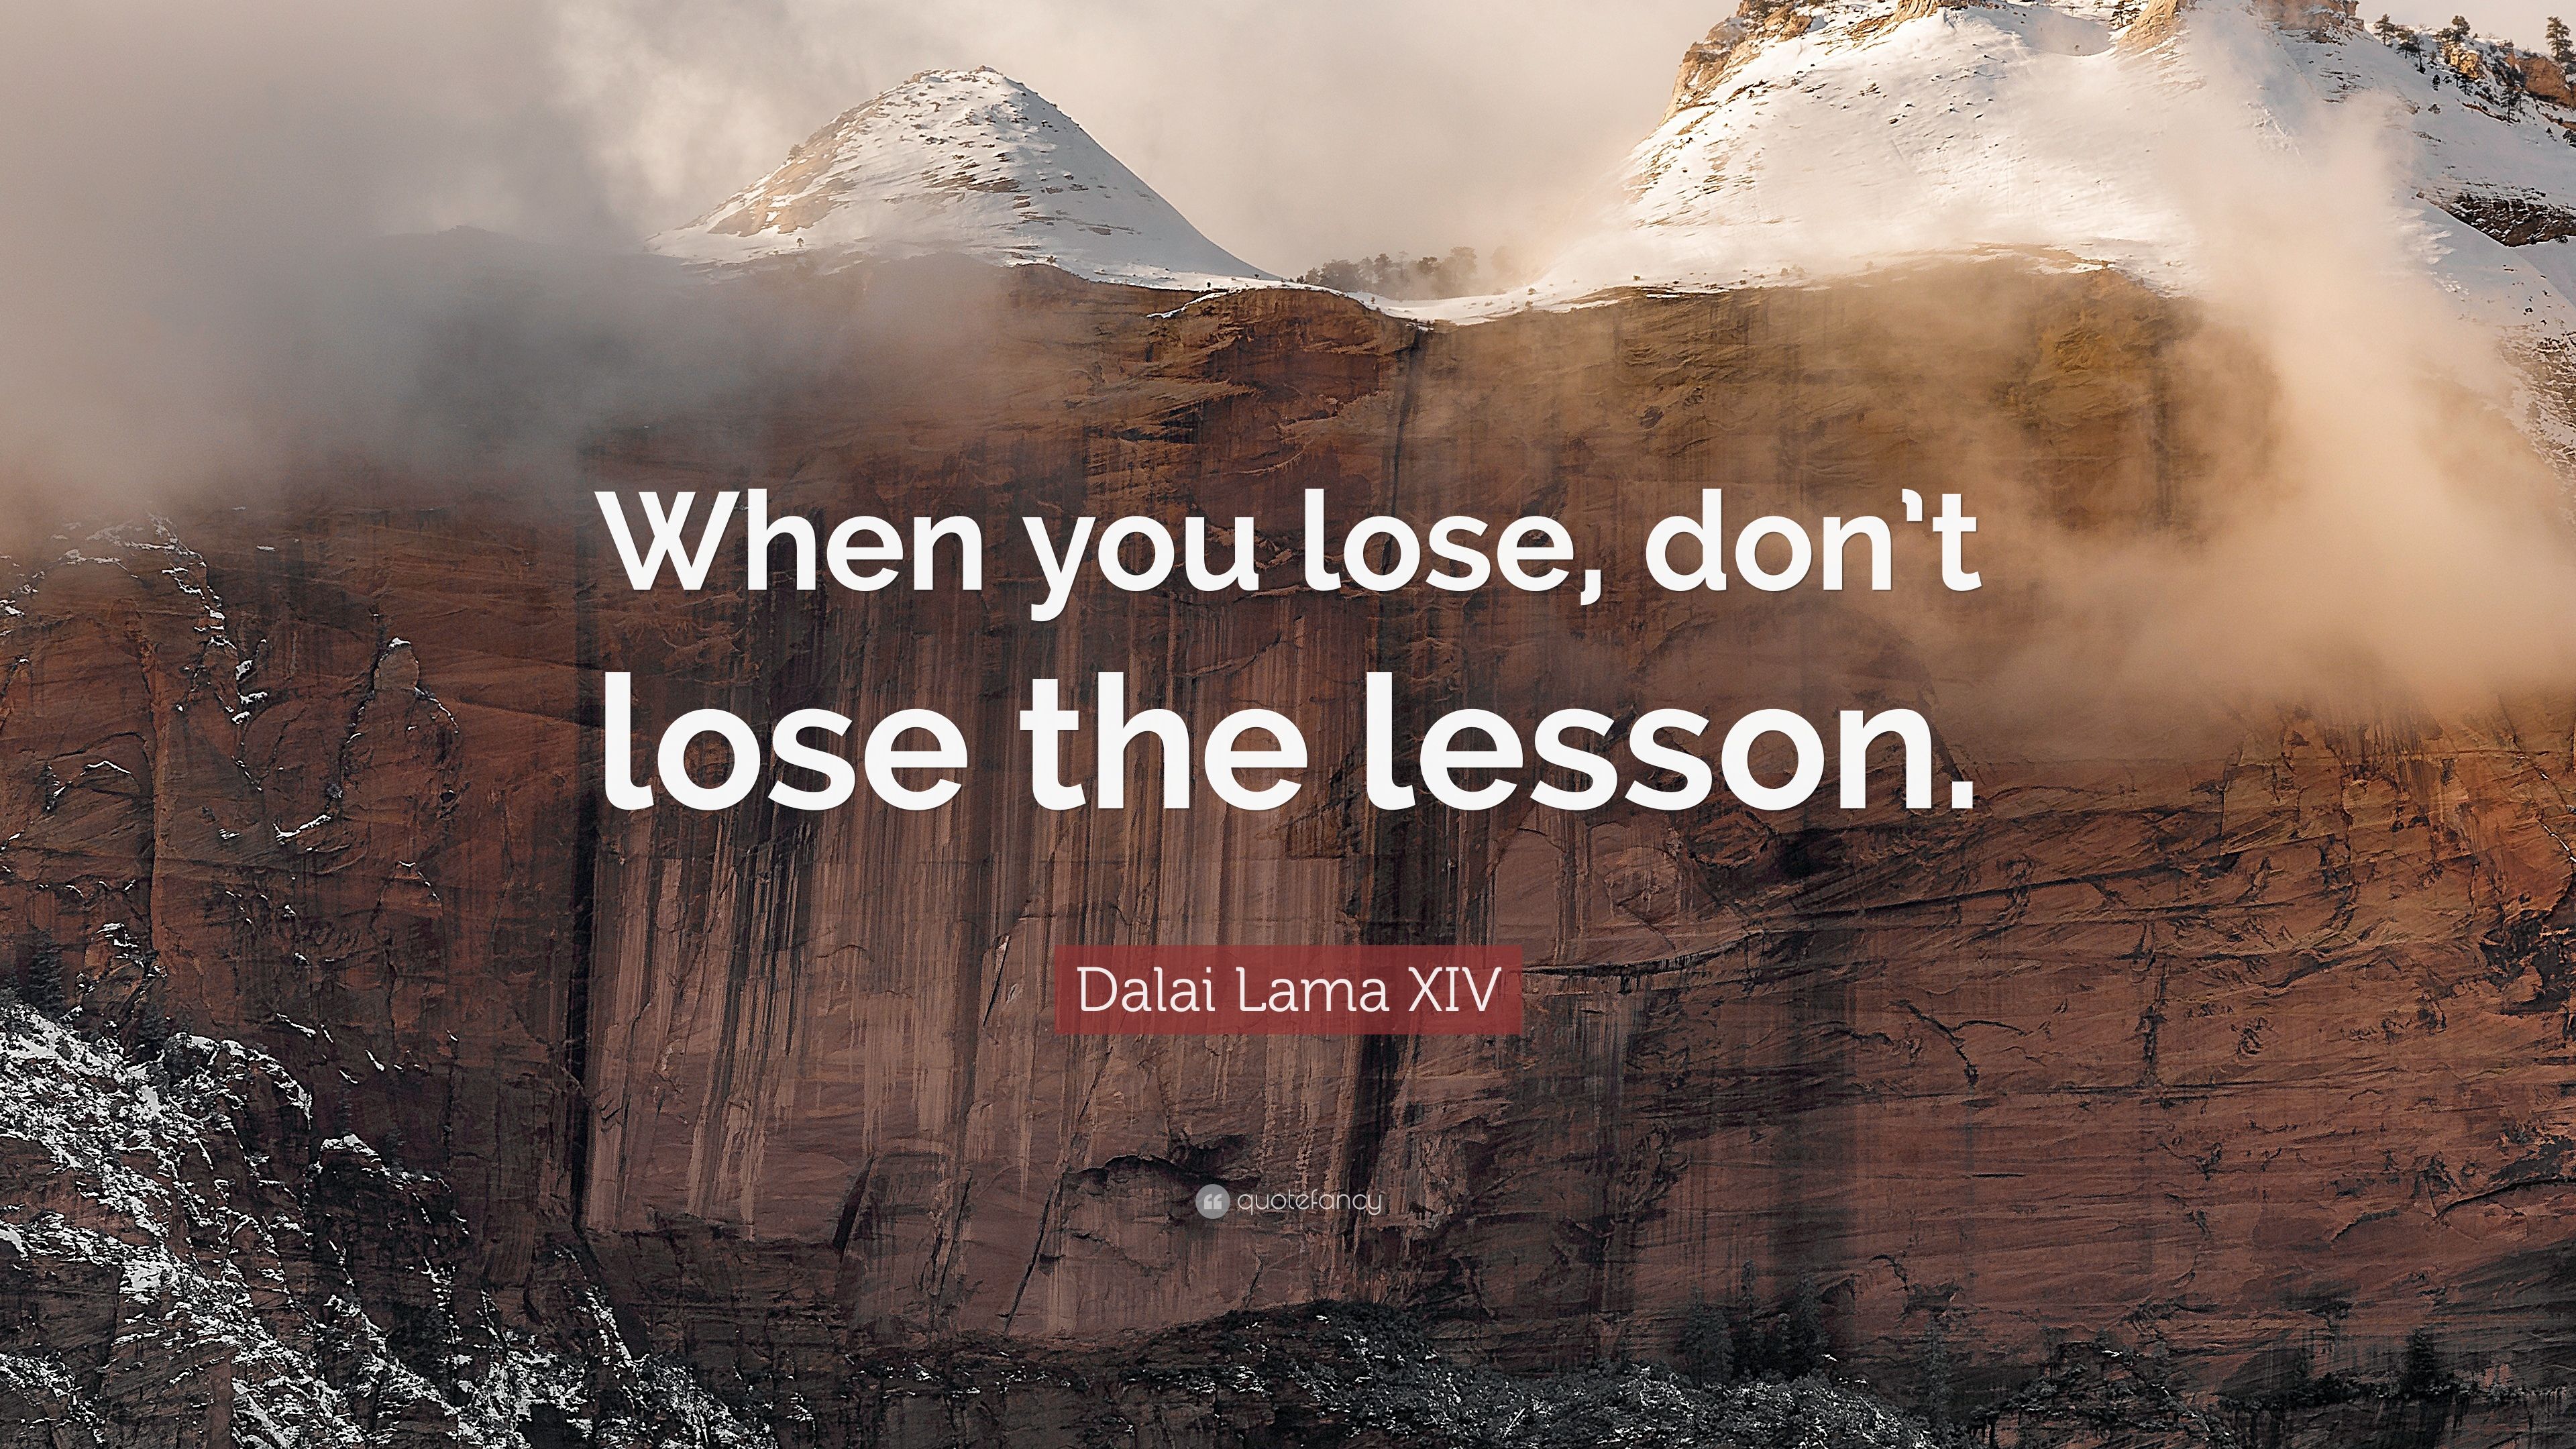 Dalai Lama XIV Quote: “When you lose, don't lose the lesson.” 12